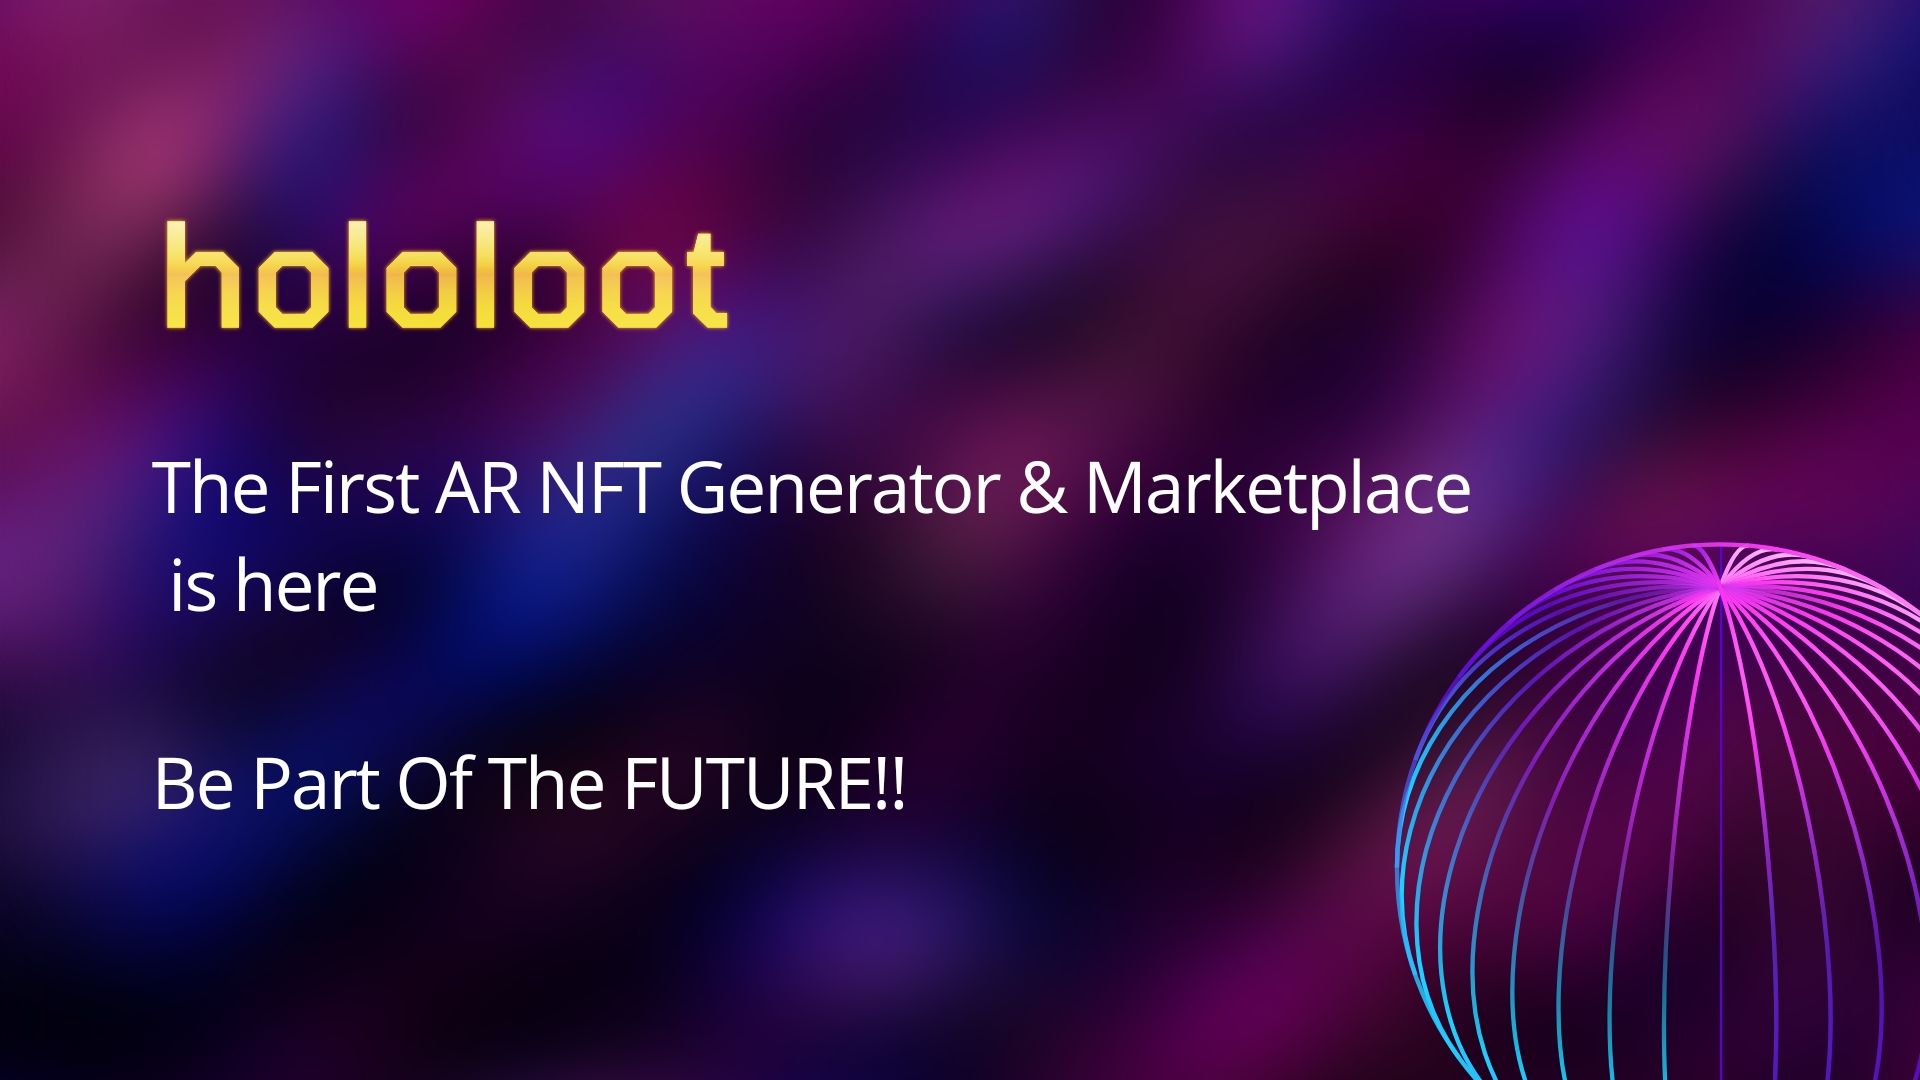 استارتاپ Hololoot متاورس و NFT را به ۱ میلیارد دستگاه واقعیت افزوده می‌آورد